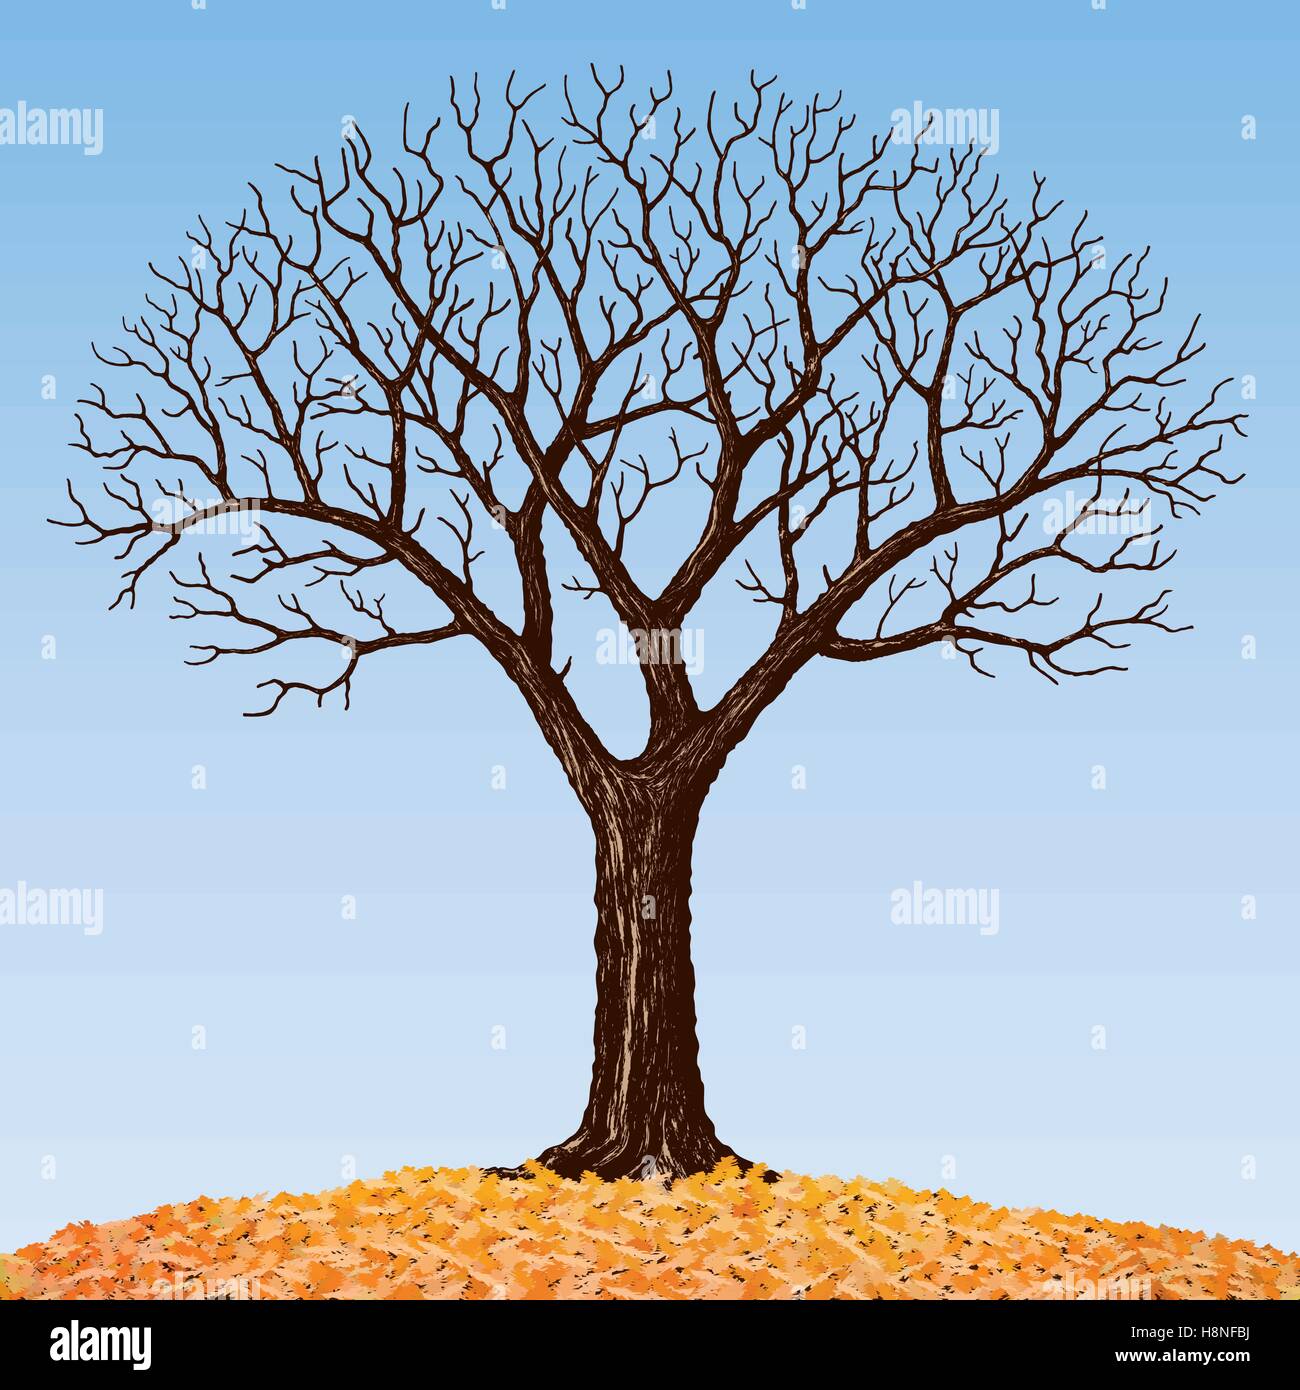 Der Baum Mit Kahlen Aste Zeichnen Stock Vektorgrafik Alamy